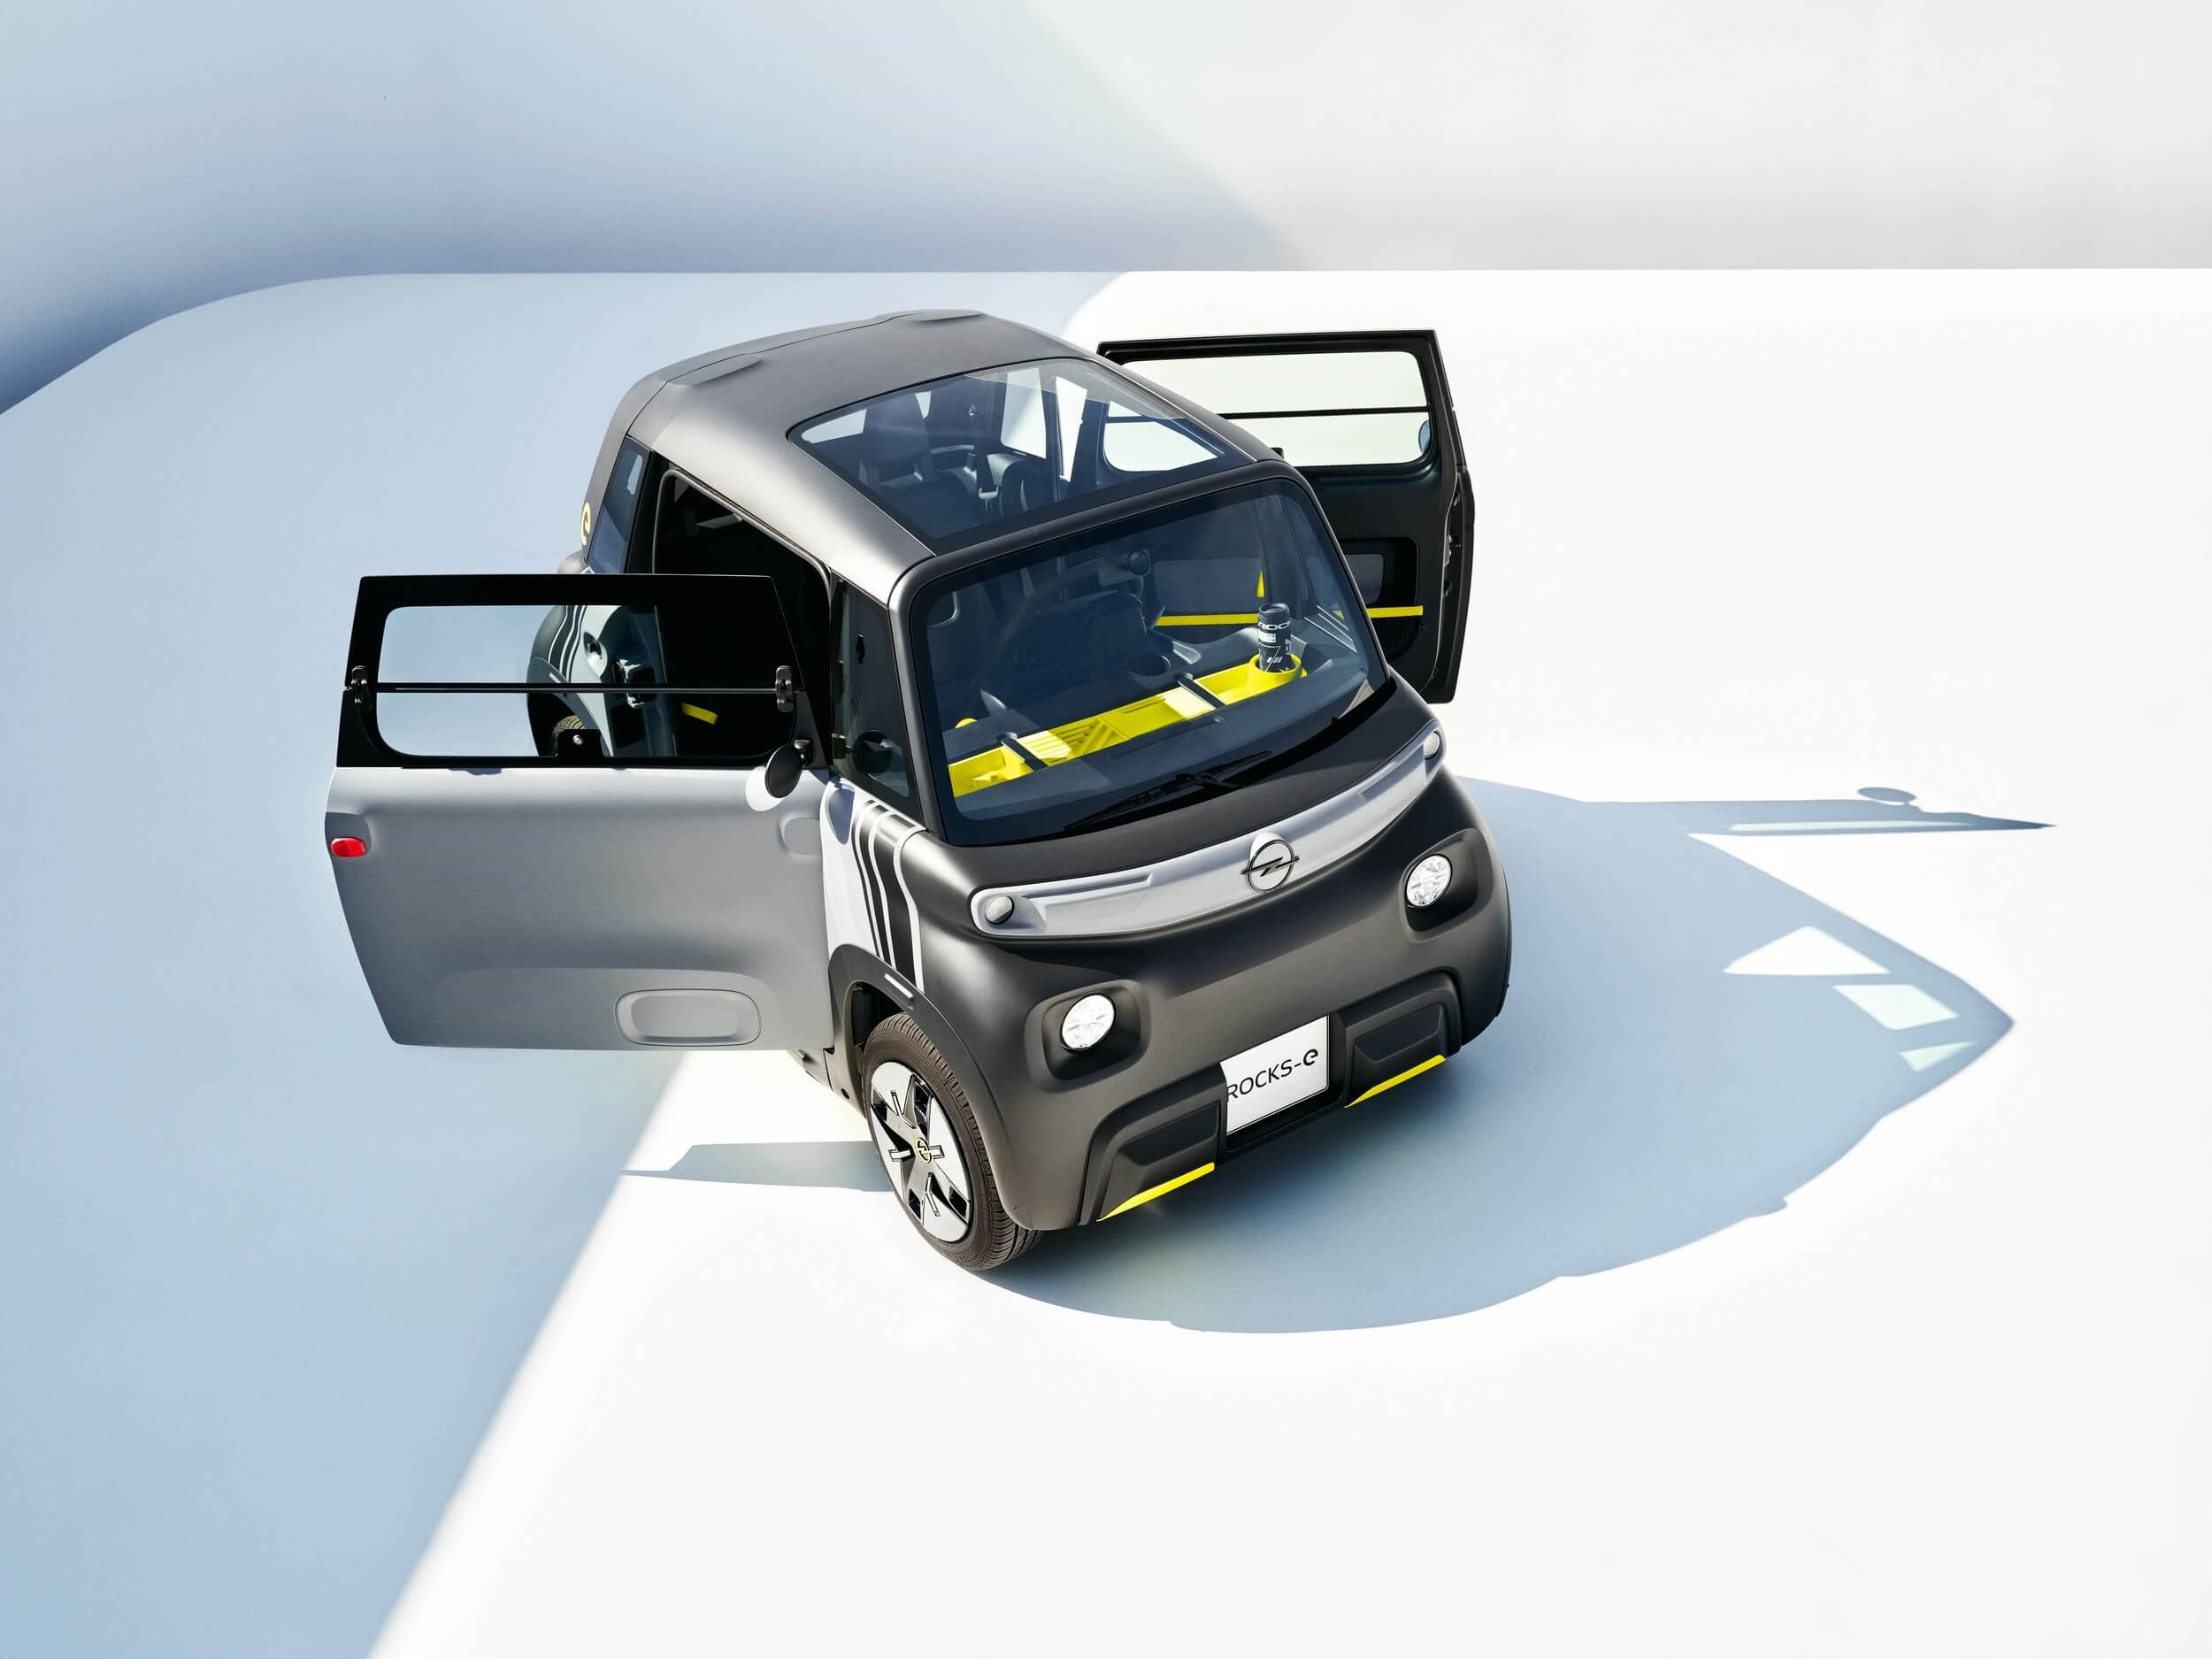 Elektrikli Opel Rocks-e tanıtıldı: İşte tasarımı ve özellikleri